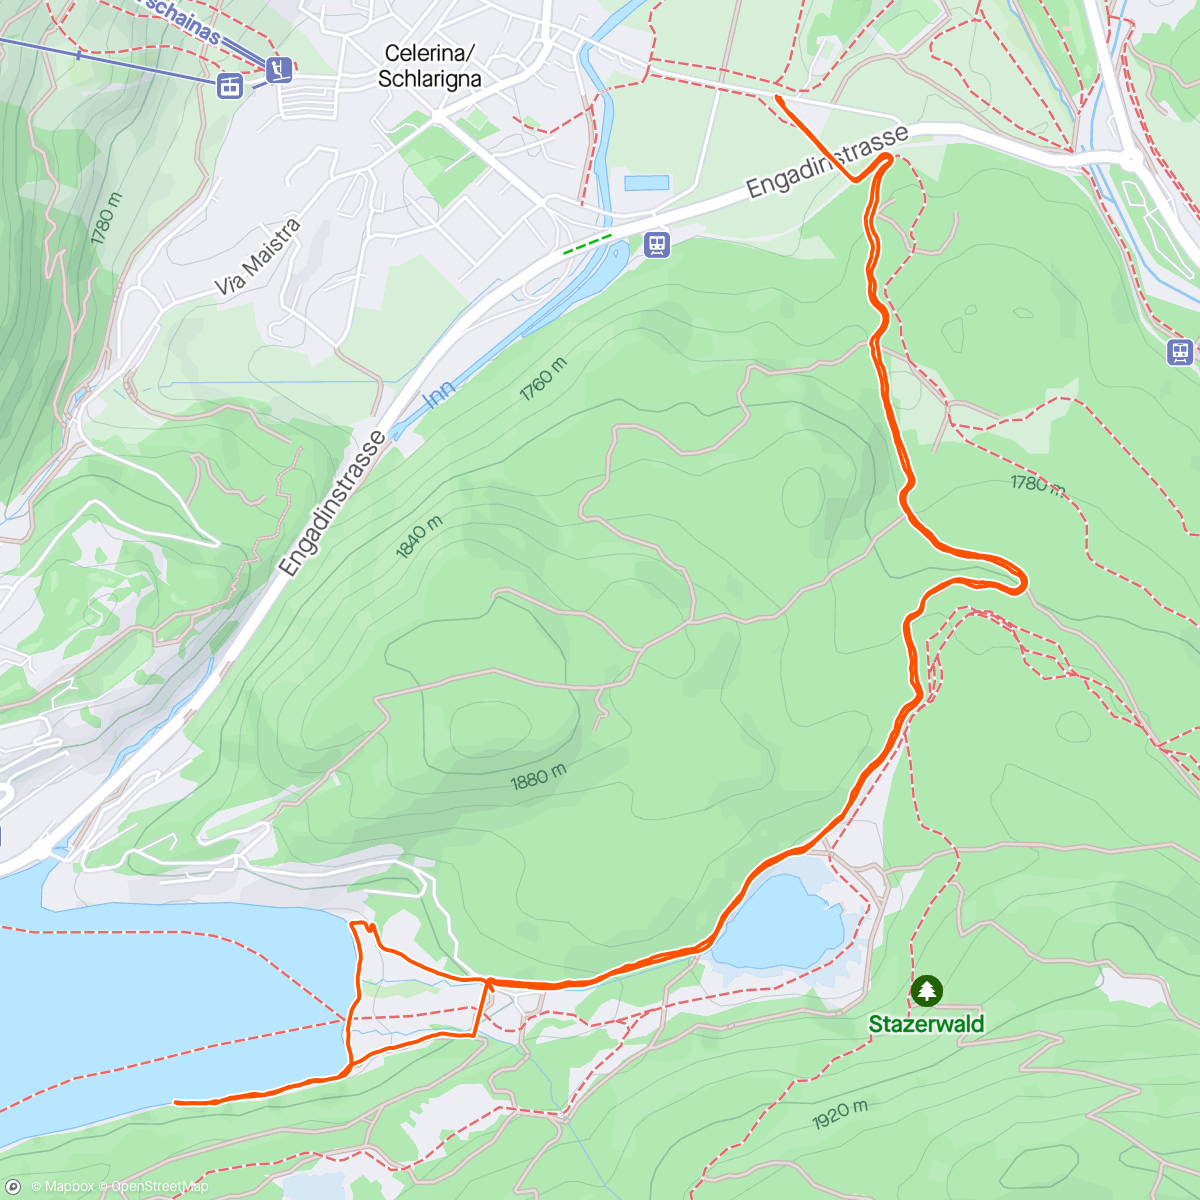 「Celerina - Lej da Staz - St. Moritz - Celerina」活動的地圖